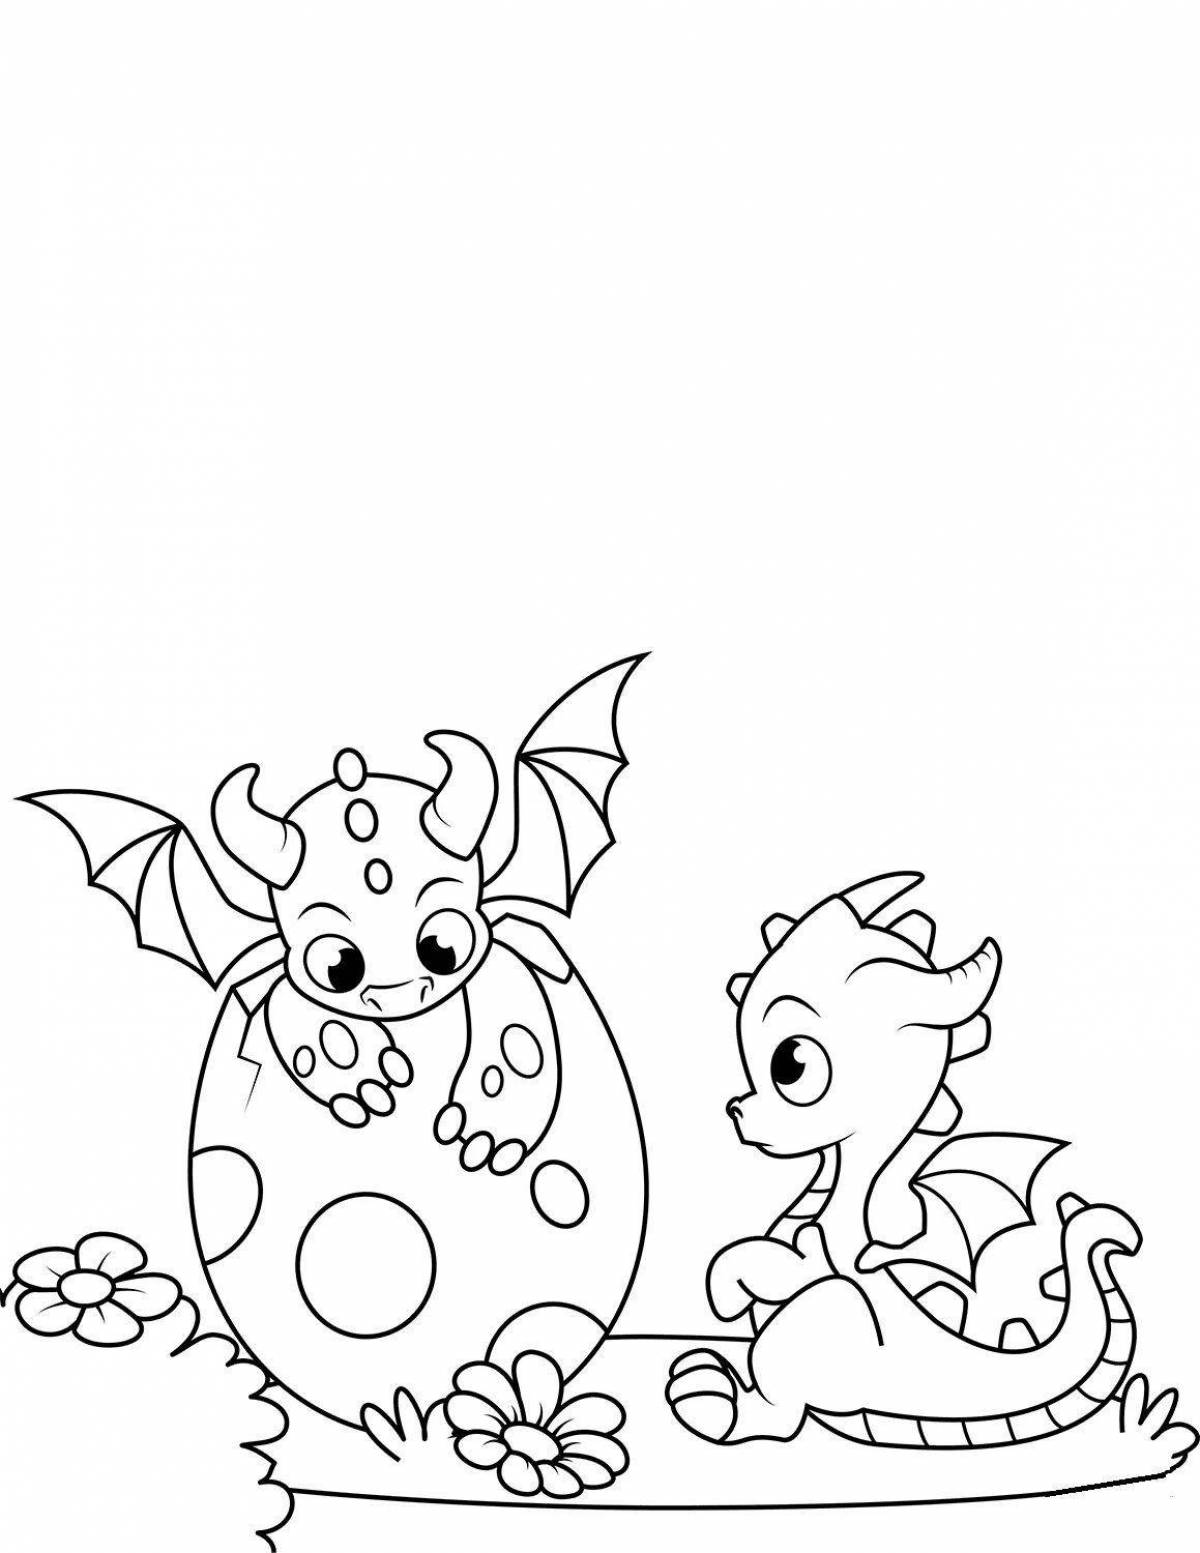 Творческая раскраска дракон для детей